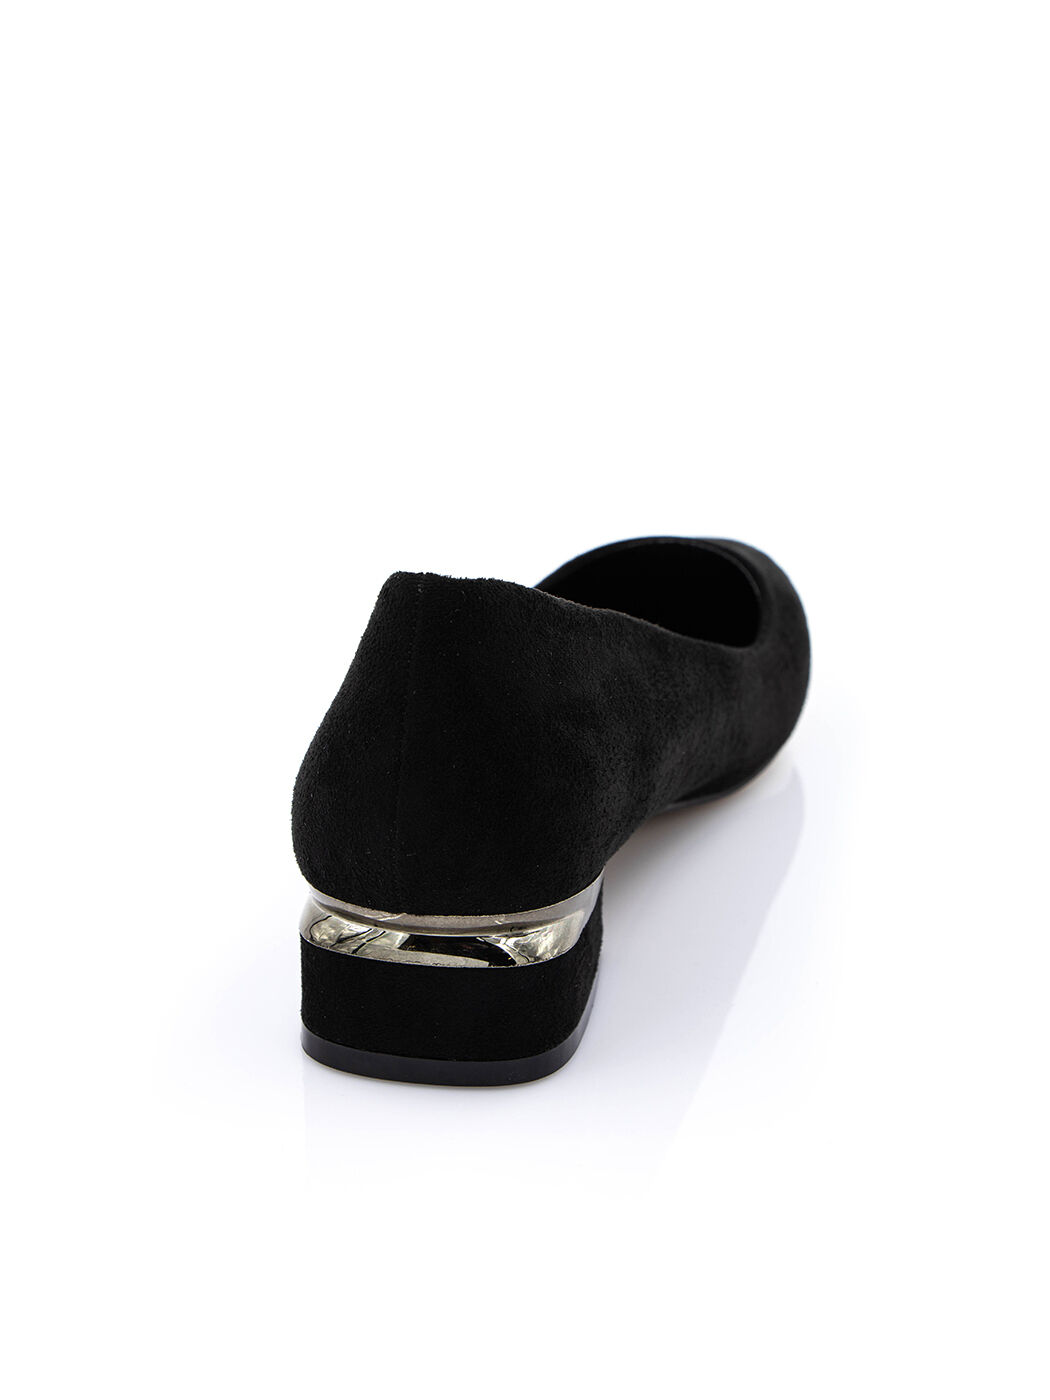 Туфли женские черные экозамша каблук устойчивый демисезон от производителя 3M вид 1